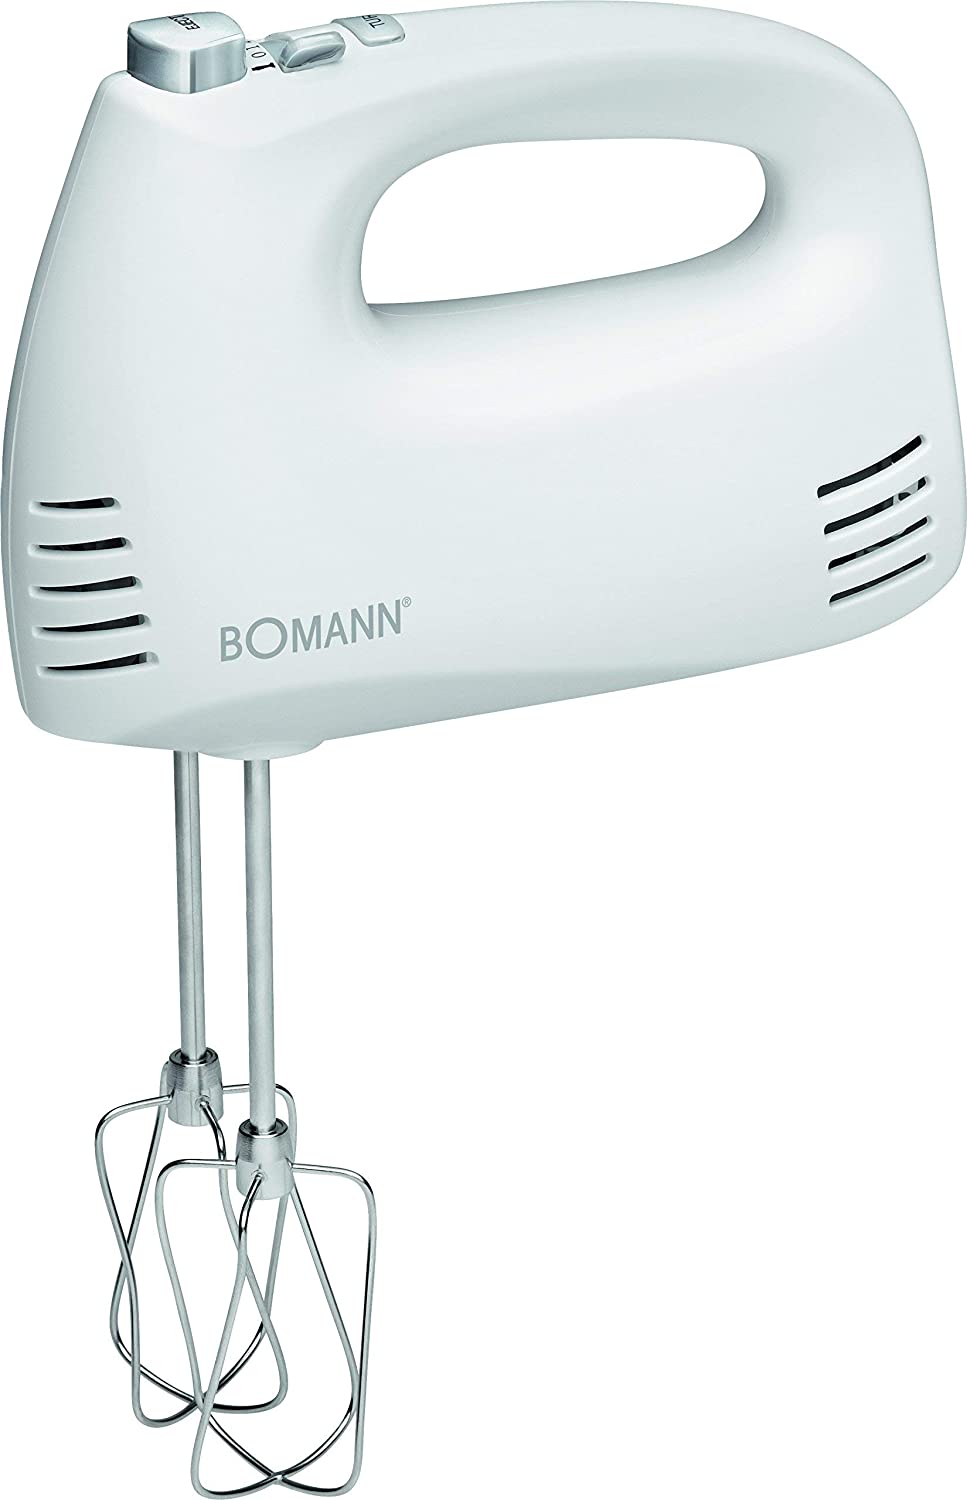 Bomann HM 381 CB Hand Mixer Set